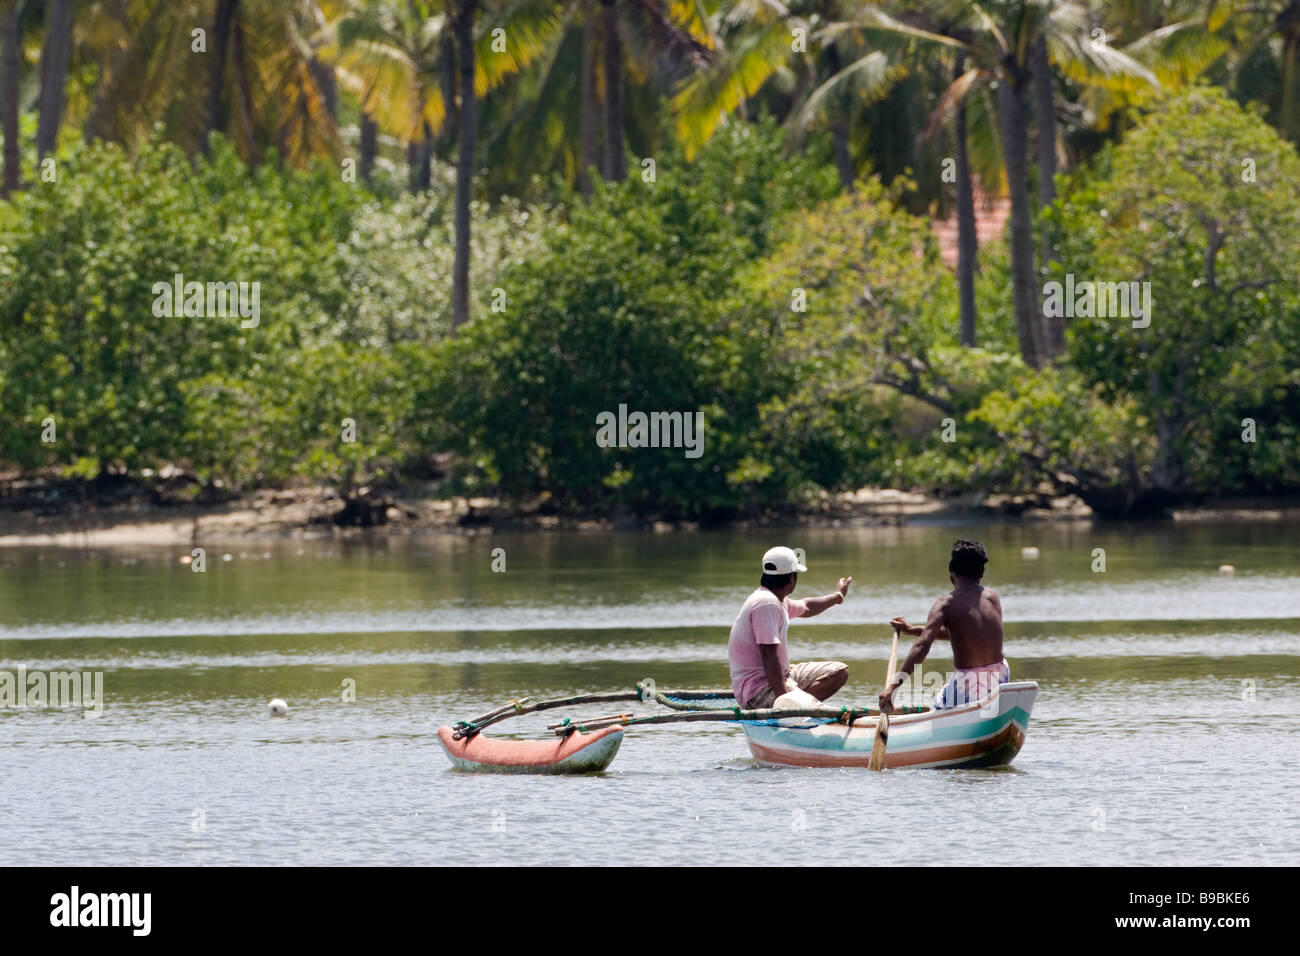 Deux pêcheurs du village sur une petite pirogue à voile à Chilaw, lagune, Sri Lanka. Banque D'Images